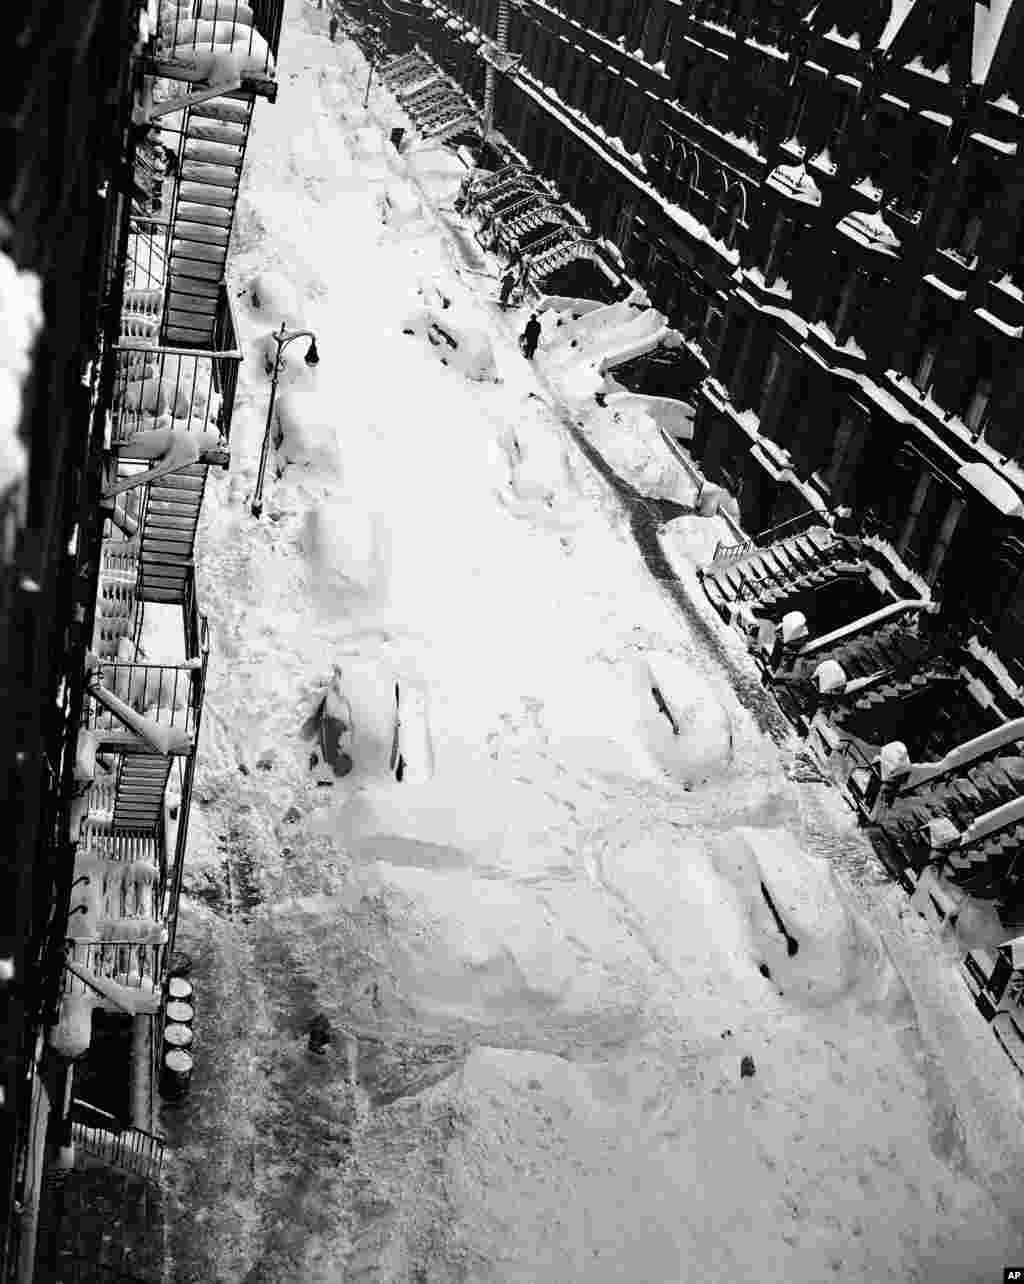 امروز در تاریخ: سال ۱۹۴۷ &ndash; دومین طوفان و کولاک برف بزرگ در تاریخ شهر نیویورک. در این طوفان که دو روز ادامه داشت، حدود ۶۵.۵ سانتیمتر برف، باعث مرگ ۷۷ نفر شد.